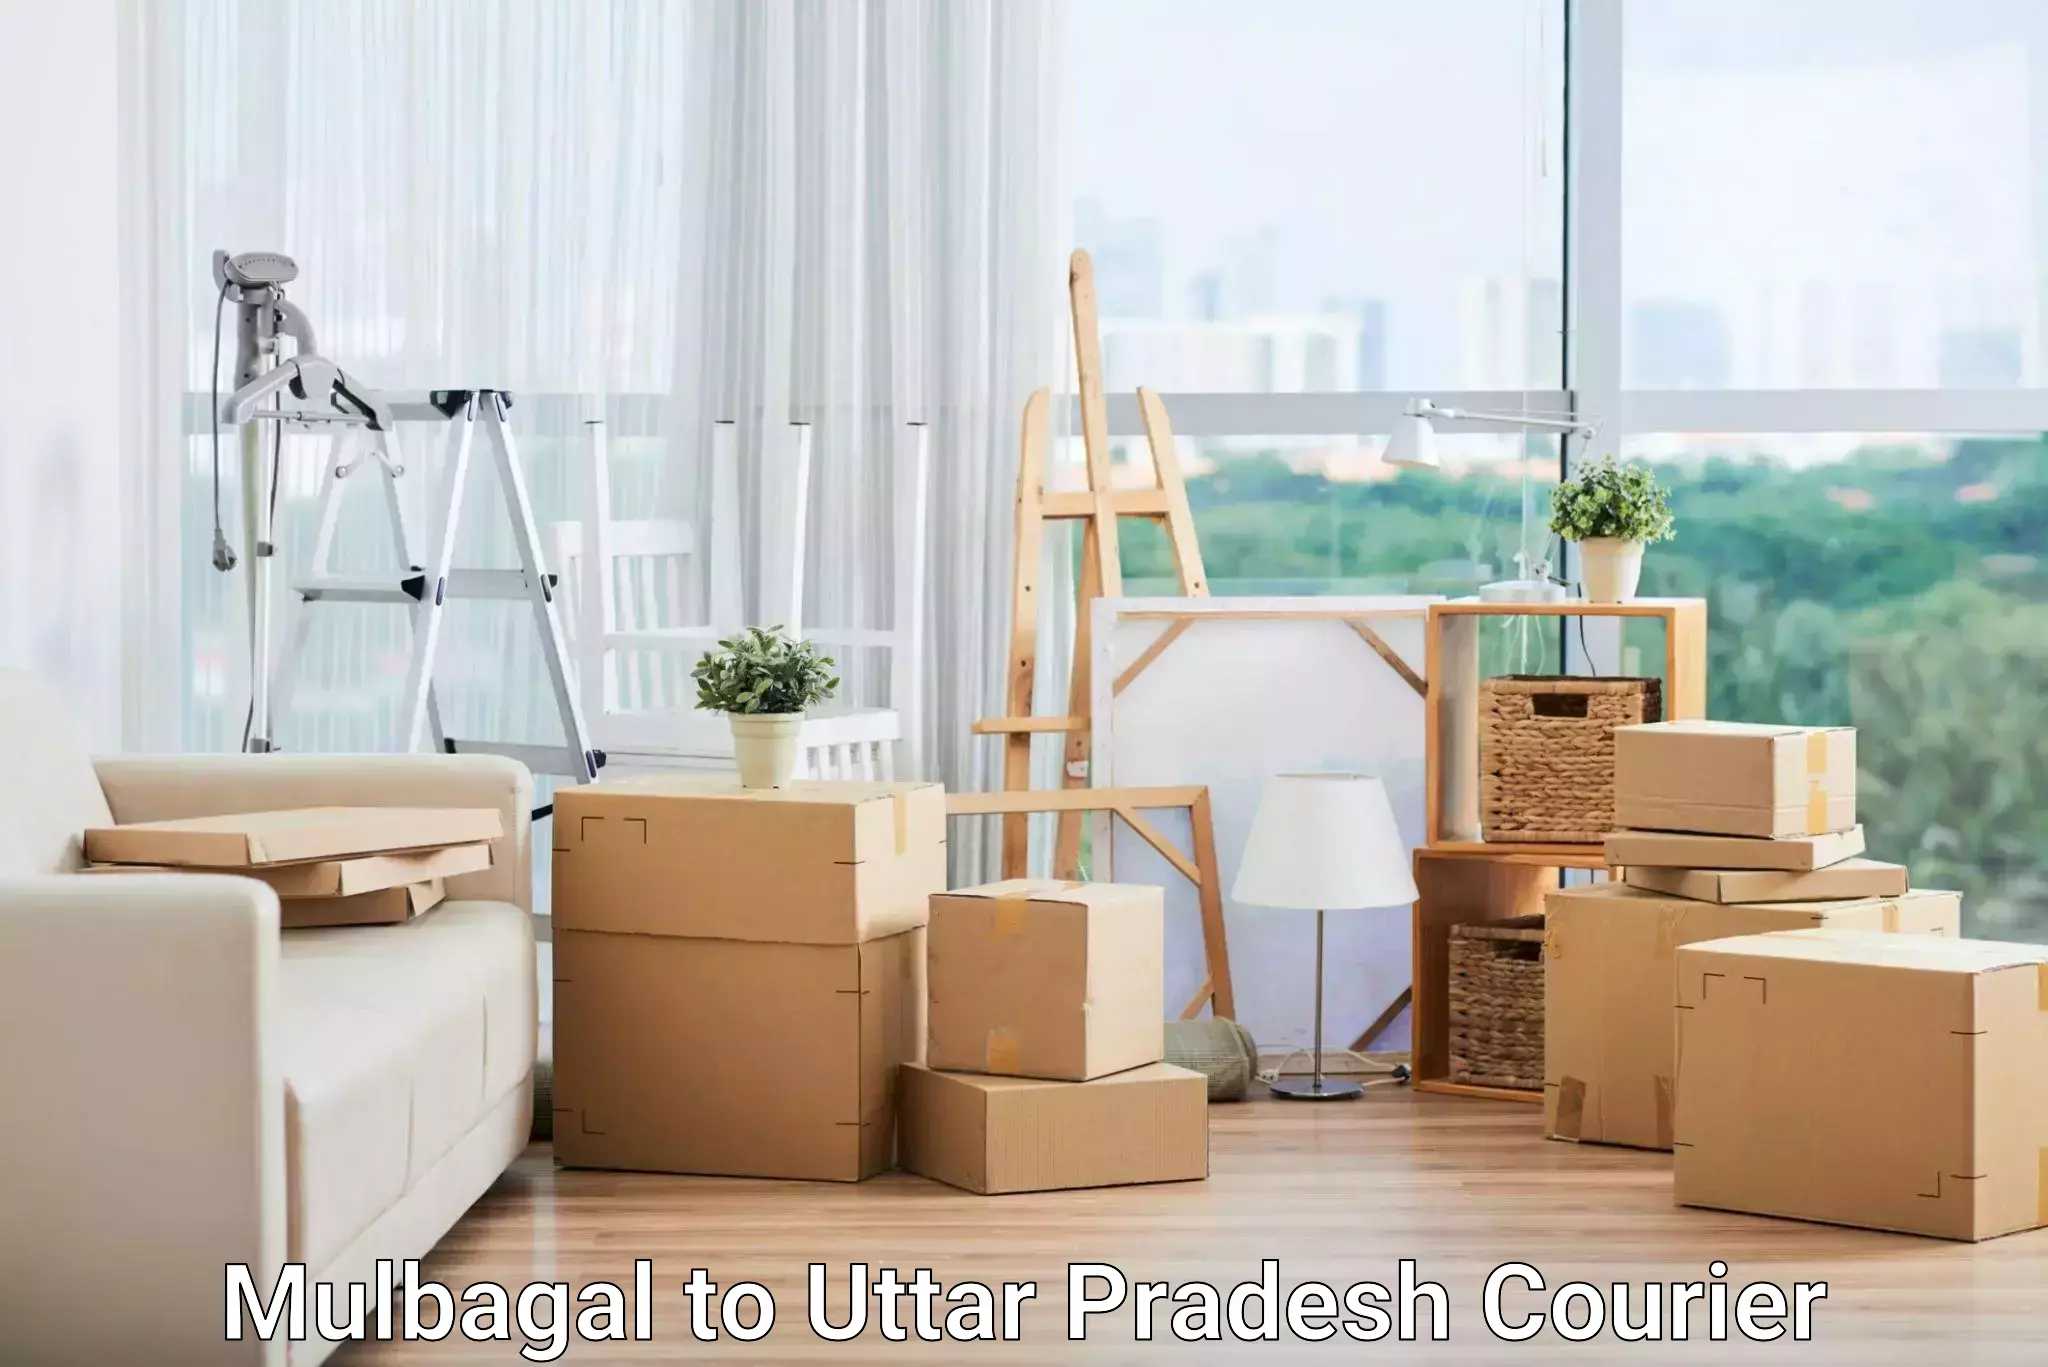 Logistics service provider Mulbagal to Uttar Pradesh